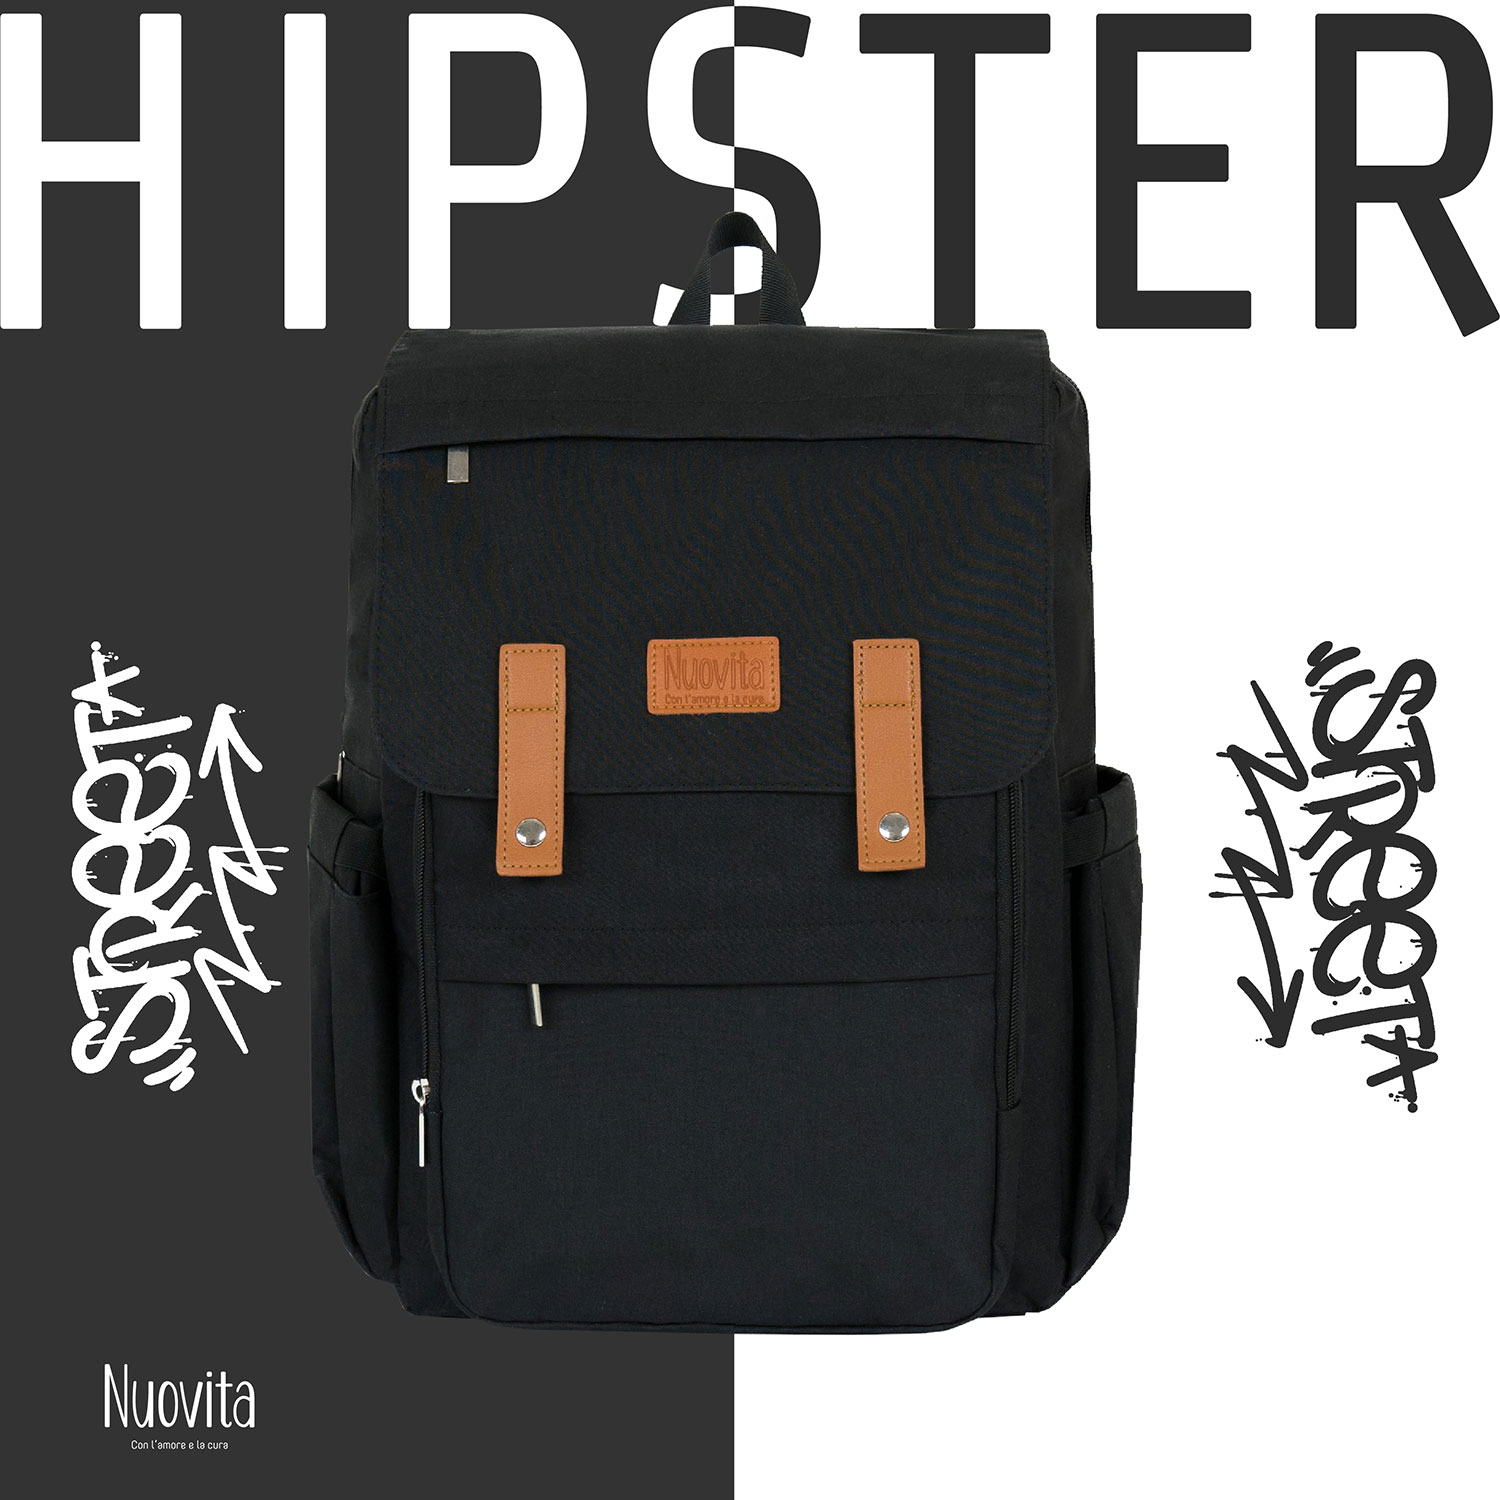 Рюкзак Nuovita CAPCAP hipster (Nero/Черный) рюкзак nuovita capcap classic nero